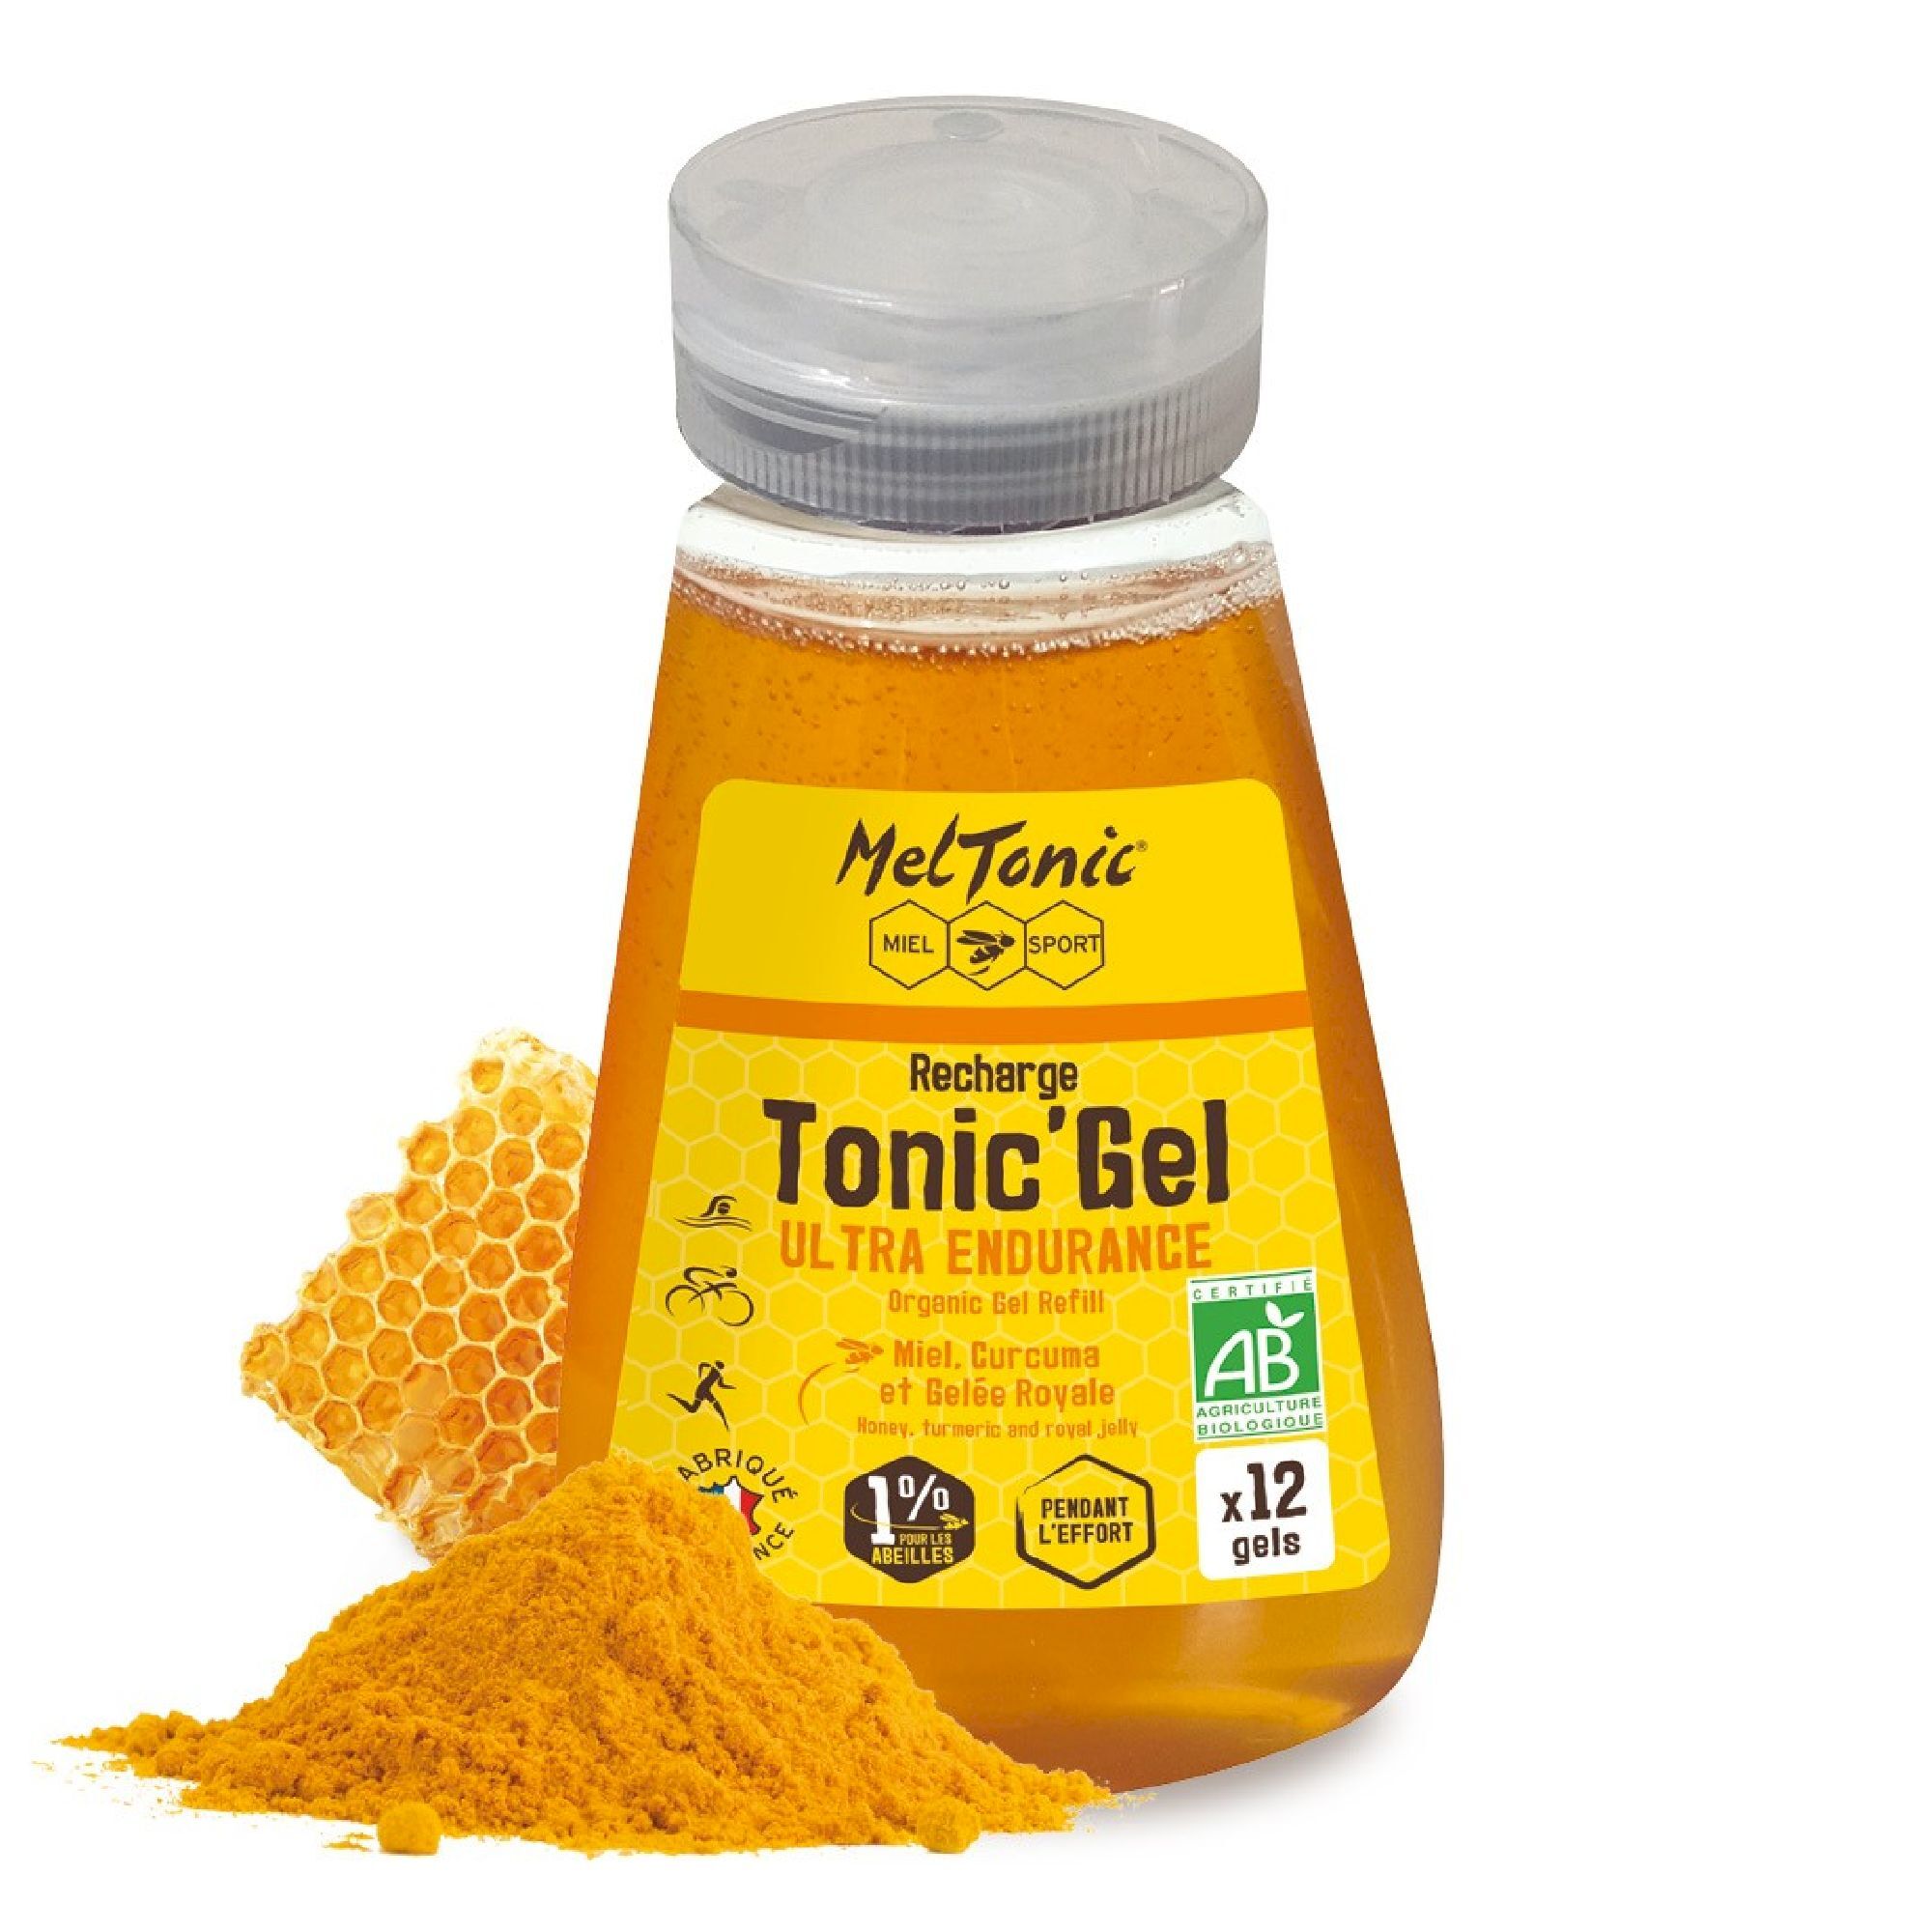 Meltonic Tonic Gel Bio Ultra Endurance - Recharge Eco - Energigel